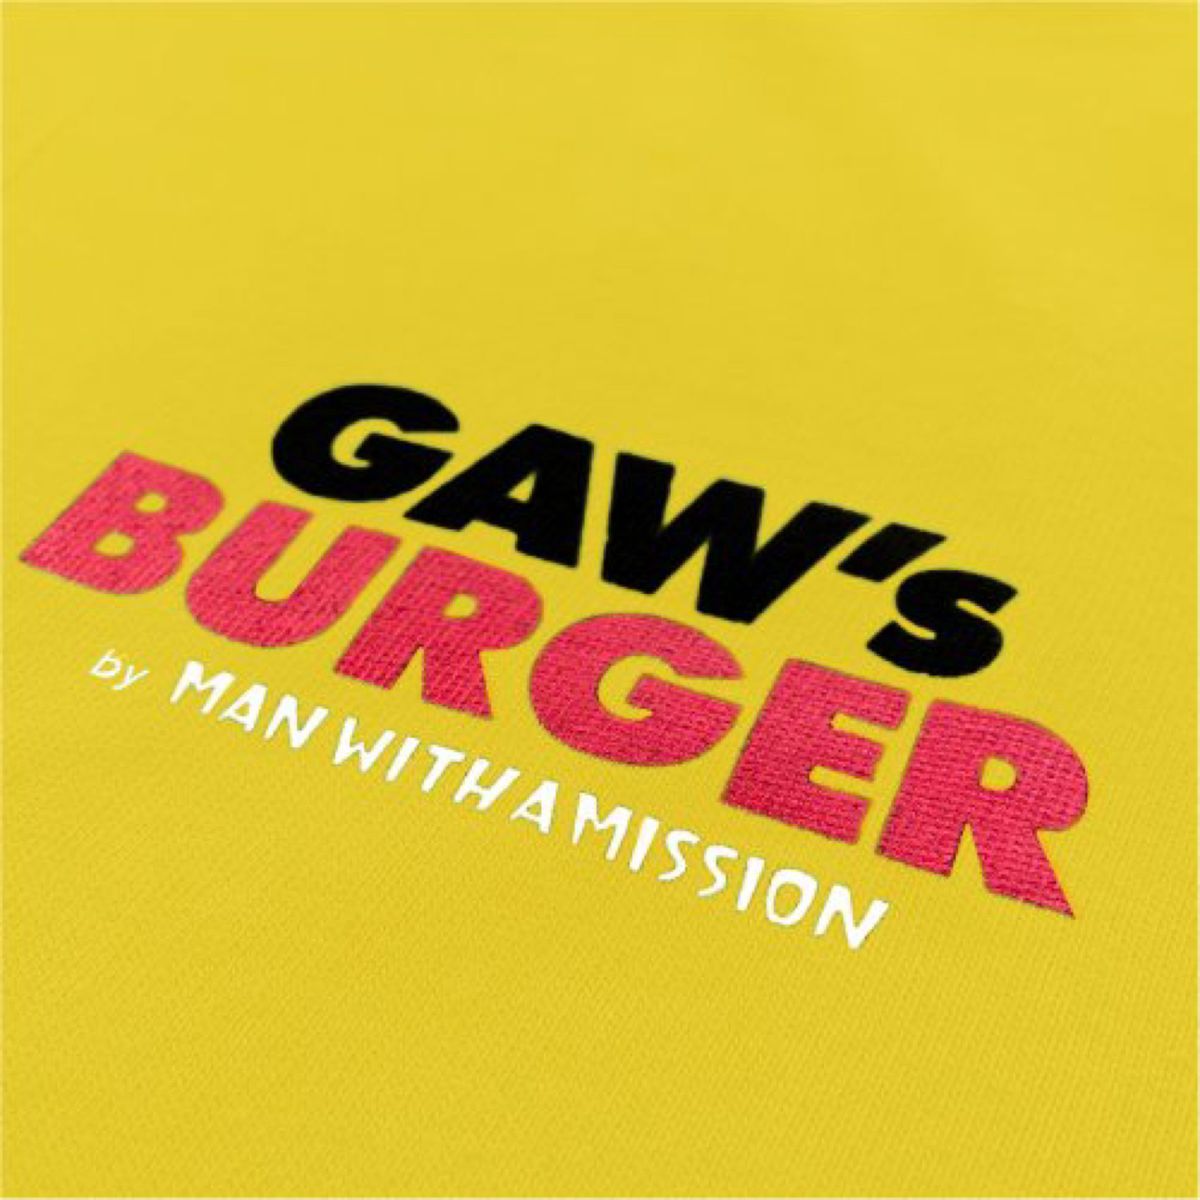 マンウィズアミッション　GAW's BURGER Tシャツ　新品未使用品